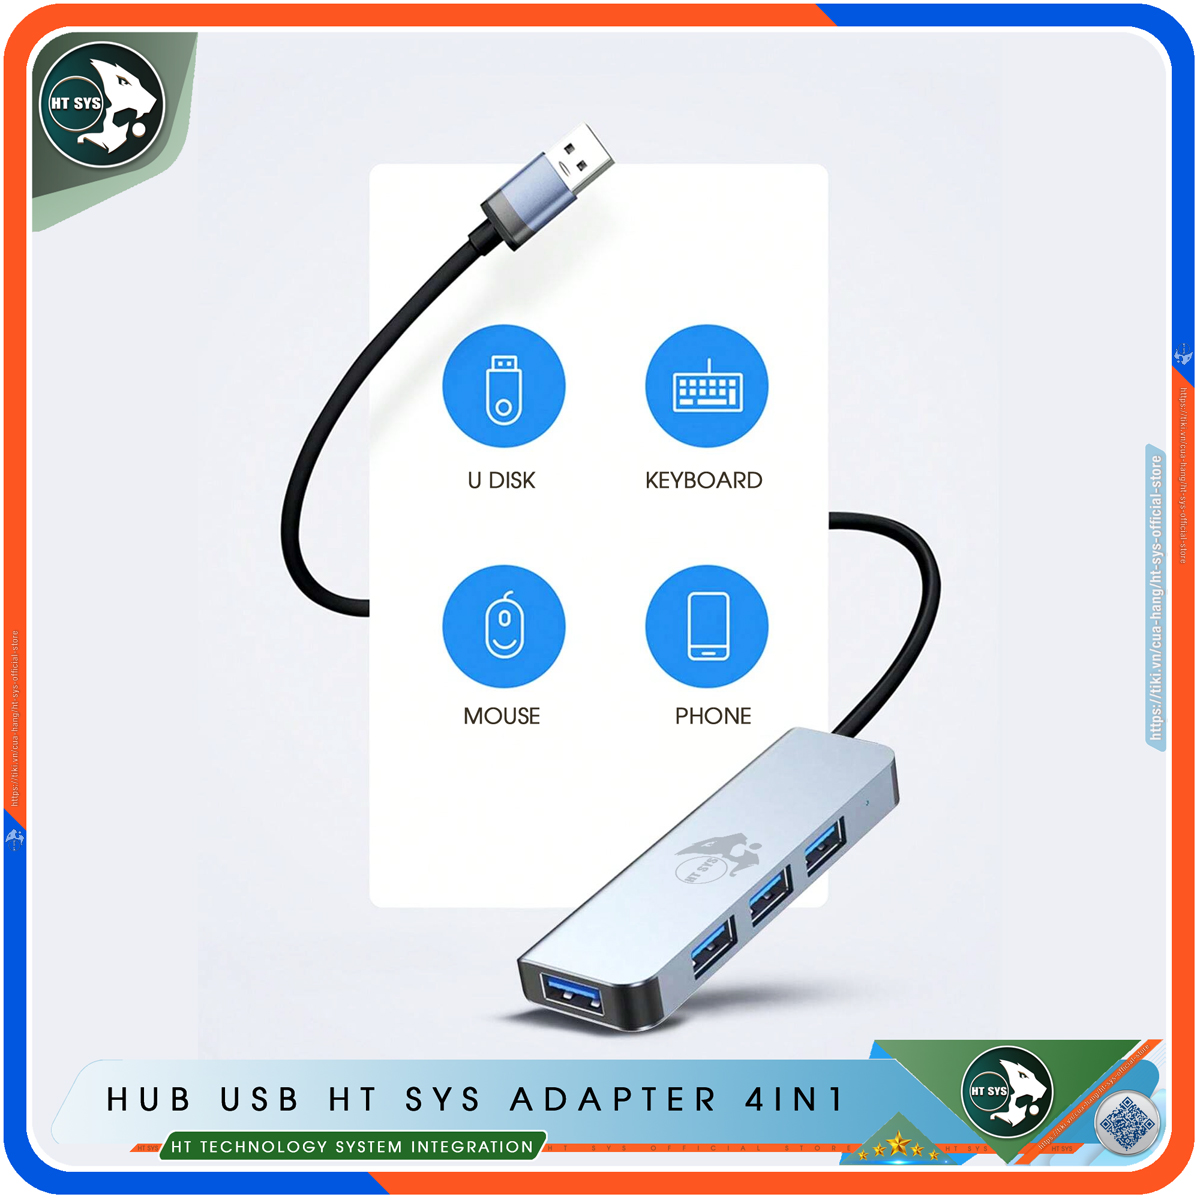 Hình ảnh Hub USB 3.0 Và Hub Type C HT SYS Adapter 4in1 - Cổng Chia USB Mở Rộng Kết Nối Tốc Độ Cao Dành Cho Macbook, Laptop, PC - Hub Chuyển Đổi USB Type-C Hỗ Trợ Sạc Pin, Kết Nối Đa Năng ổ Cứng, Bàn Phím, Chuột, Máy In, Ổ Chia USB - Hàng Chính Hãng